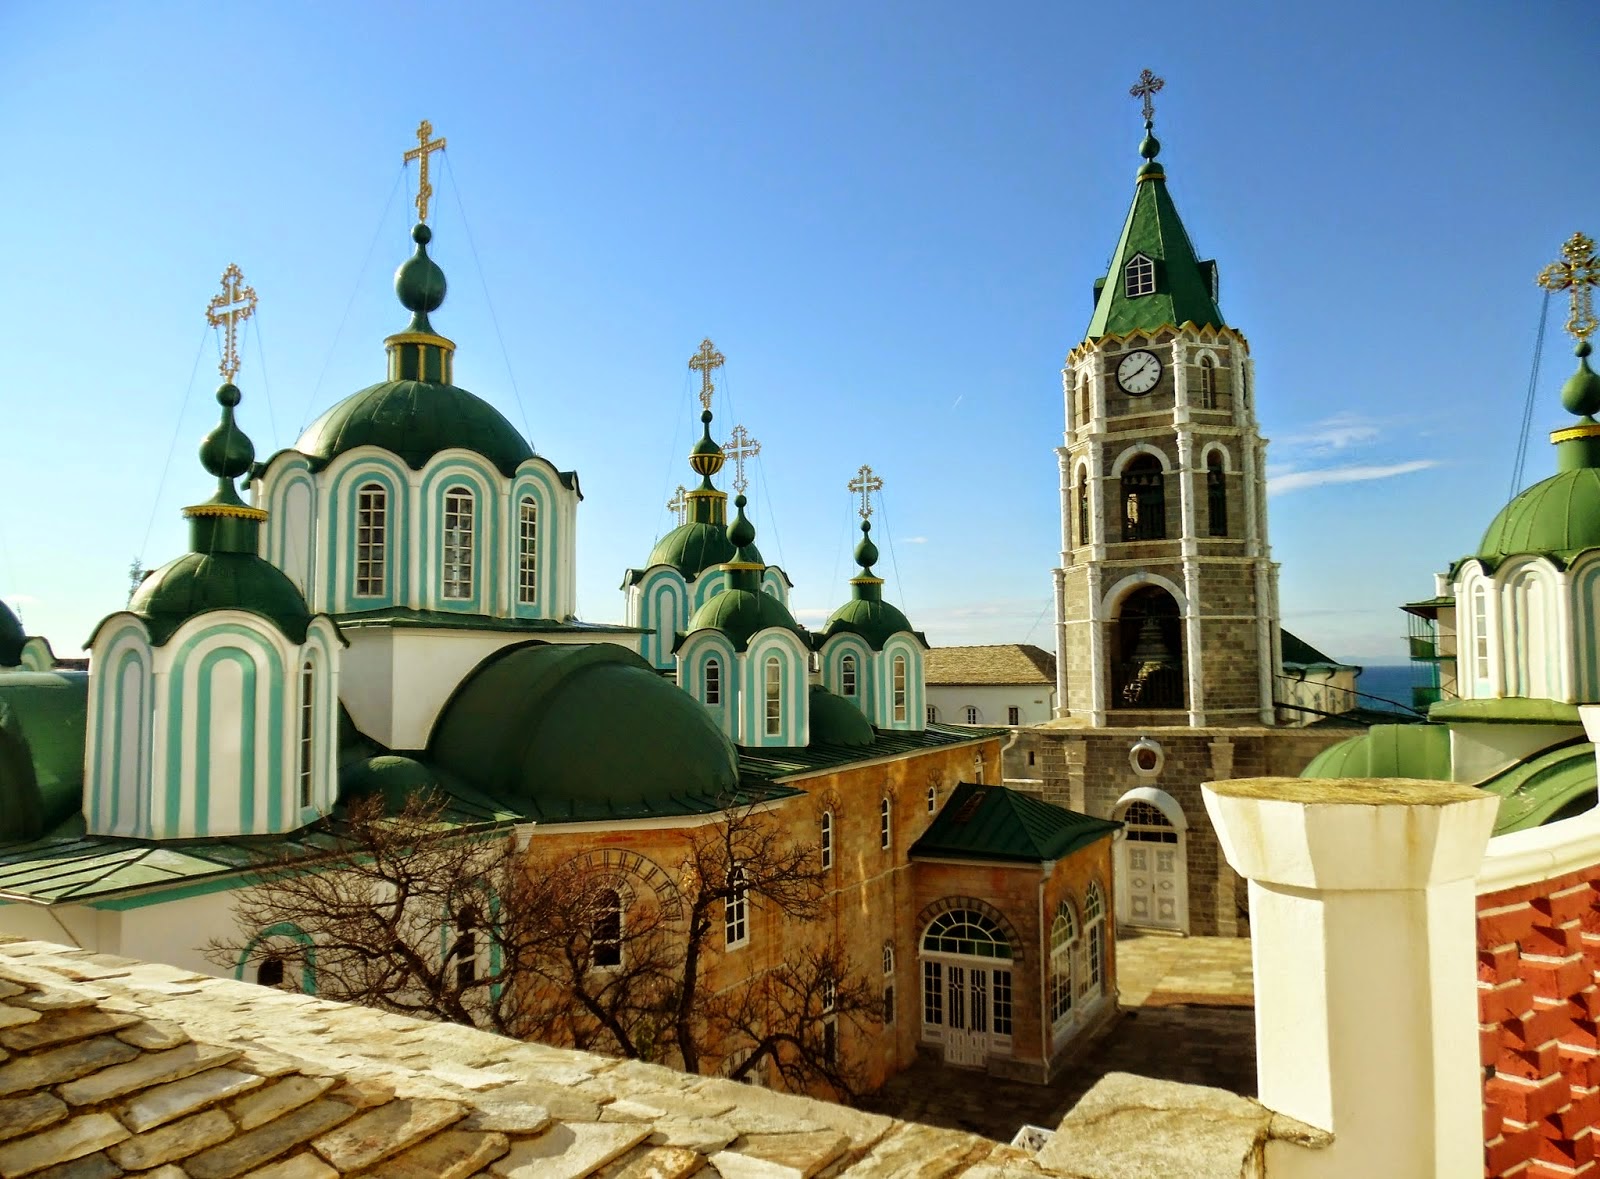 5844 - Φωτογραφίες του κωδωνοστασίου της Ρωσικής Μονής του Αγίου Παντελεήμονος στο Άγιο Όρος - Φωτογραφία 3